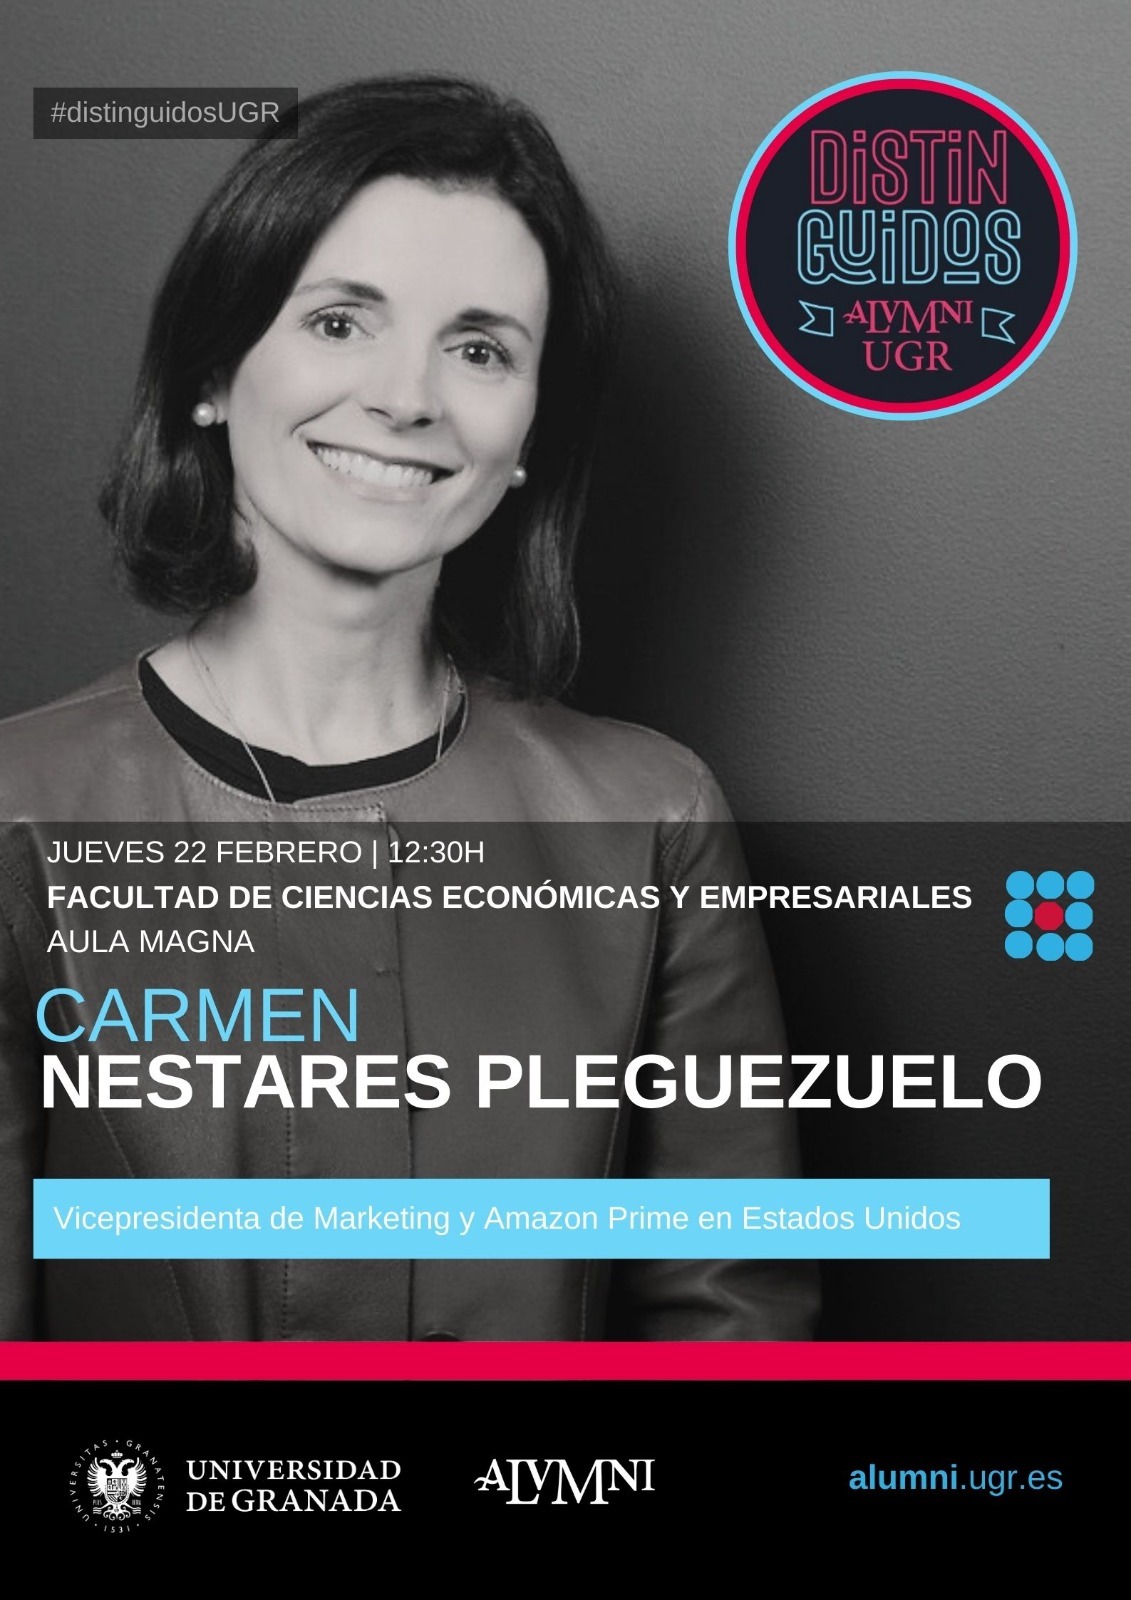 Imagen del cartel anunciador de la conferencia de Carmen Nestares vicepresidenta de AMAZON USA el 22 de febrero a las 12:30 horas en nuestra Facultad